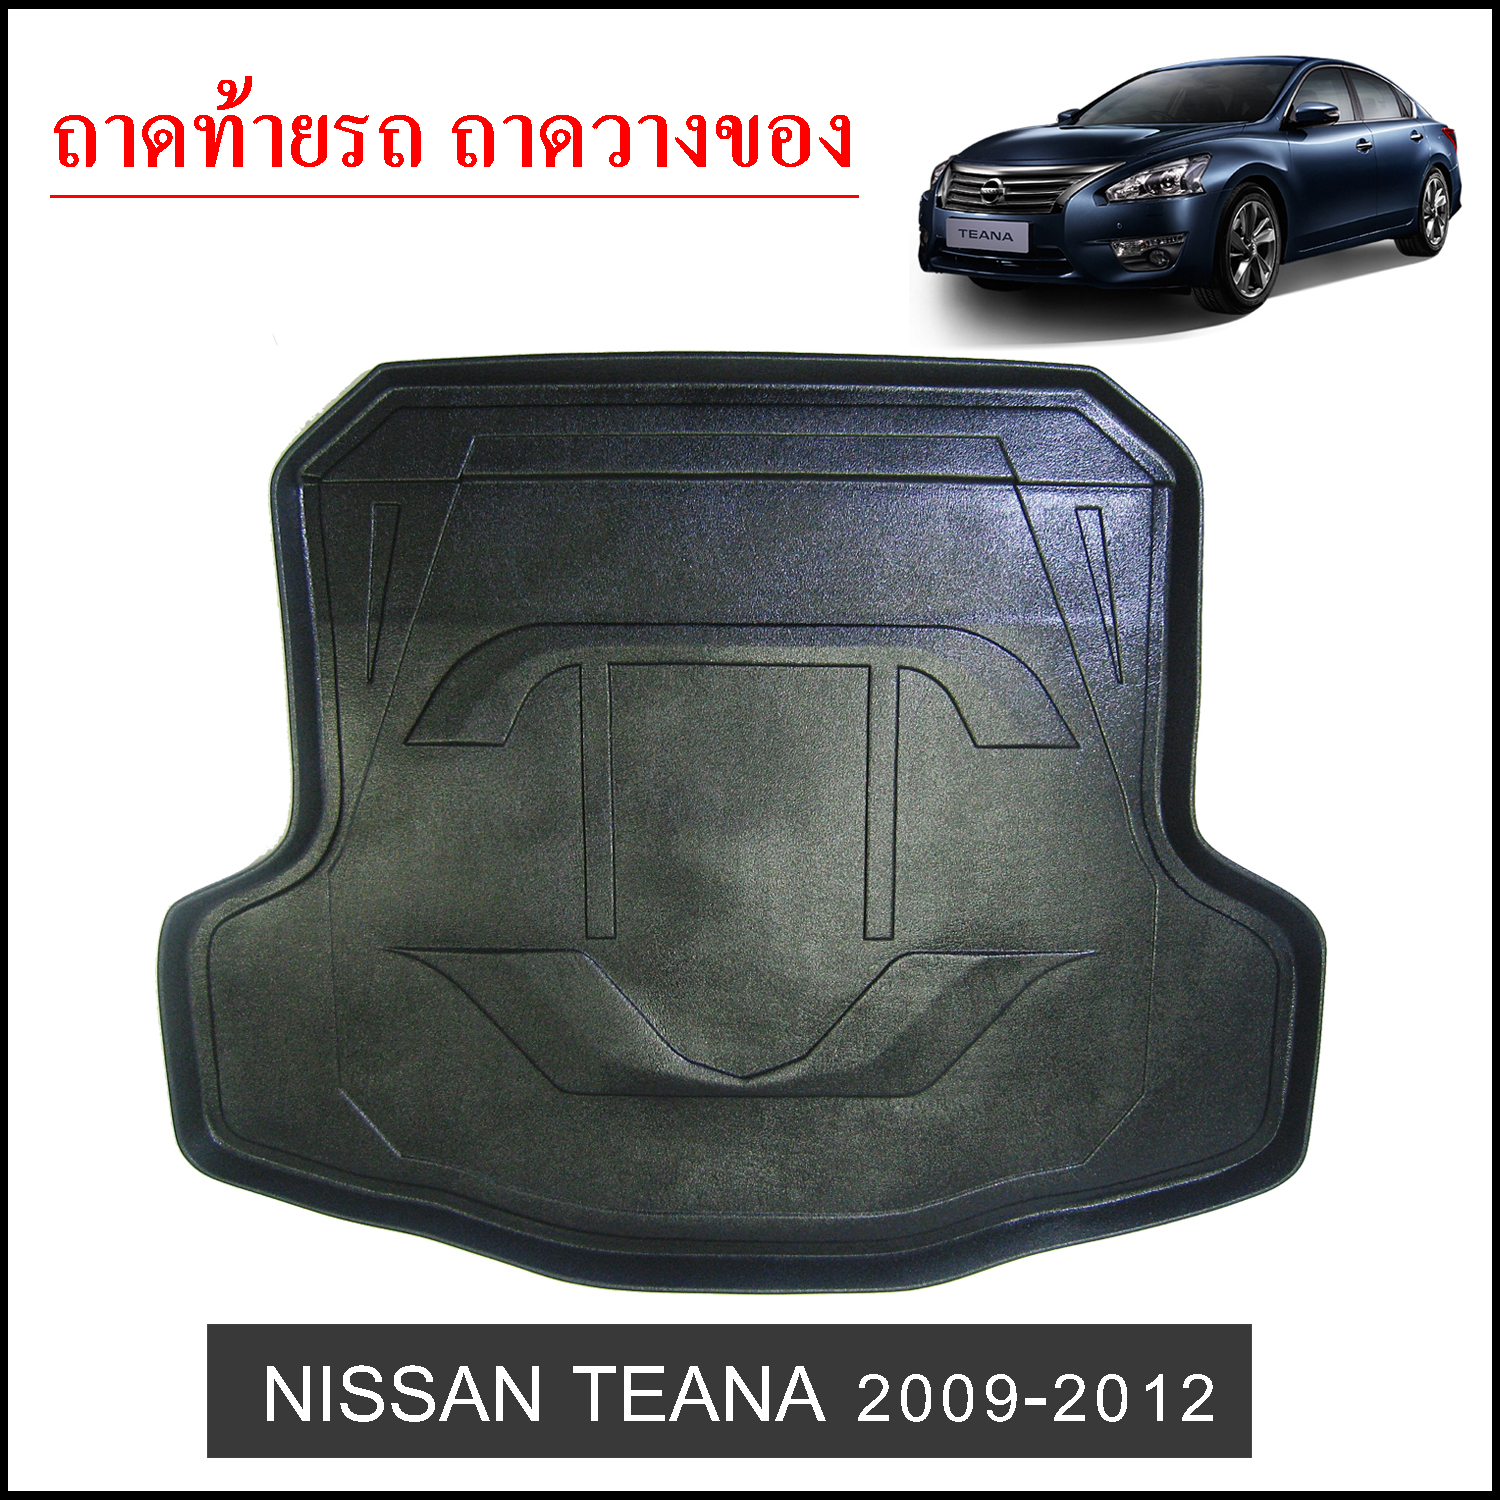 ถาดท้ายวางของ Nissan Teana 2009-2012